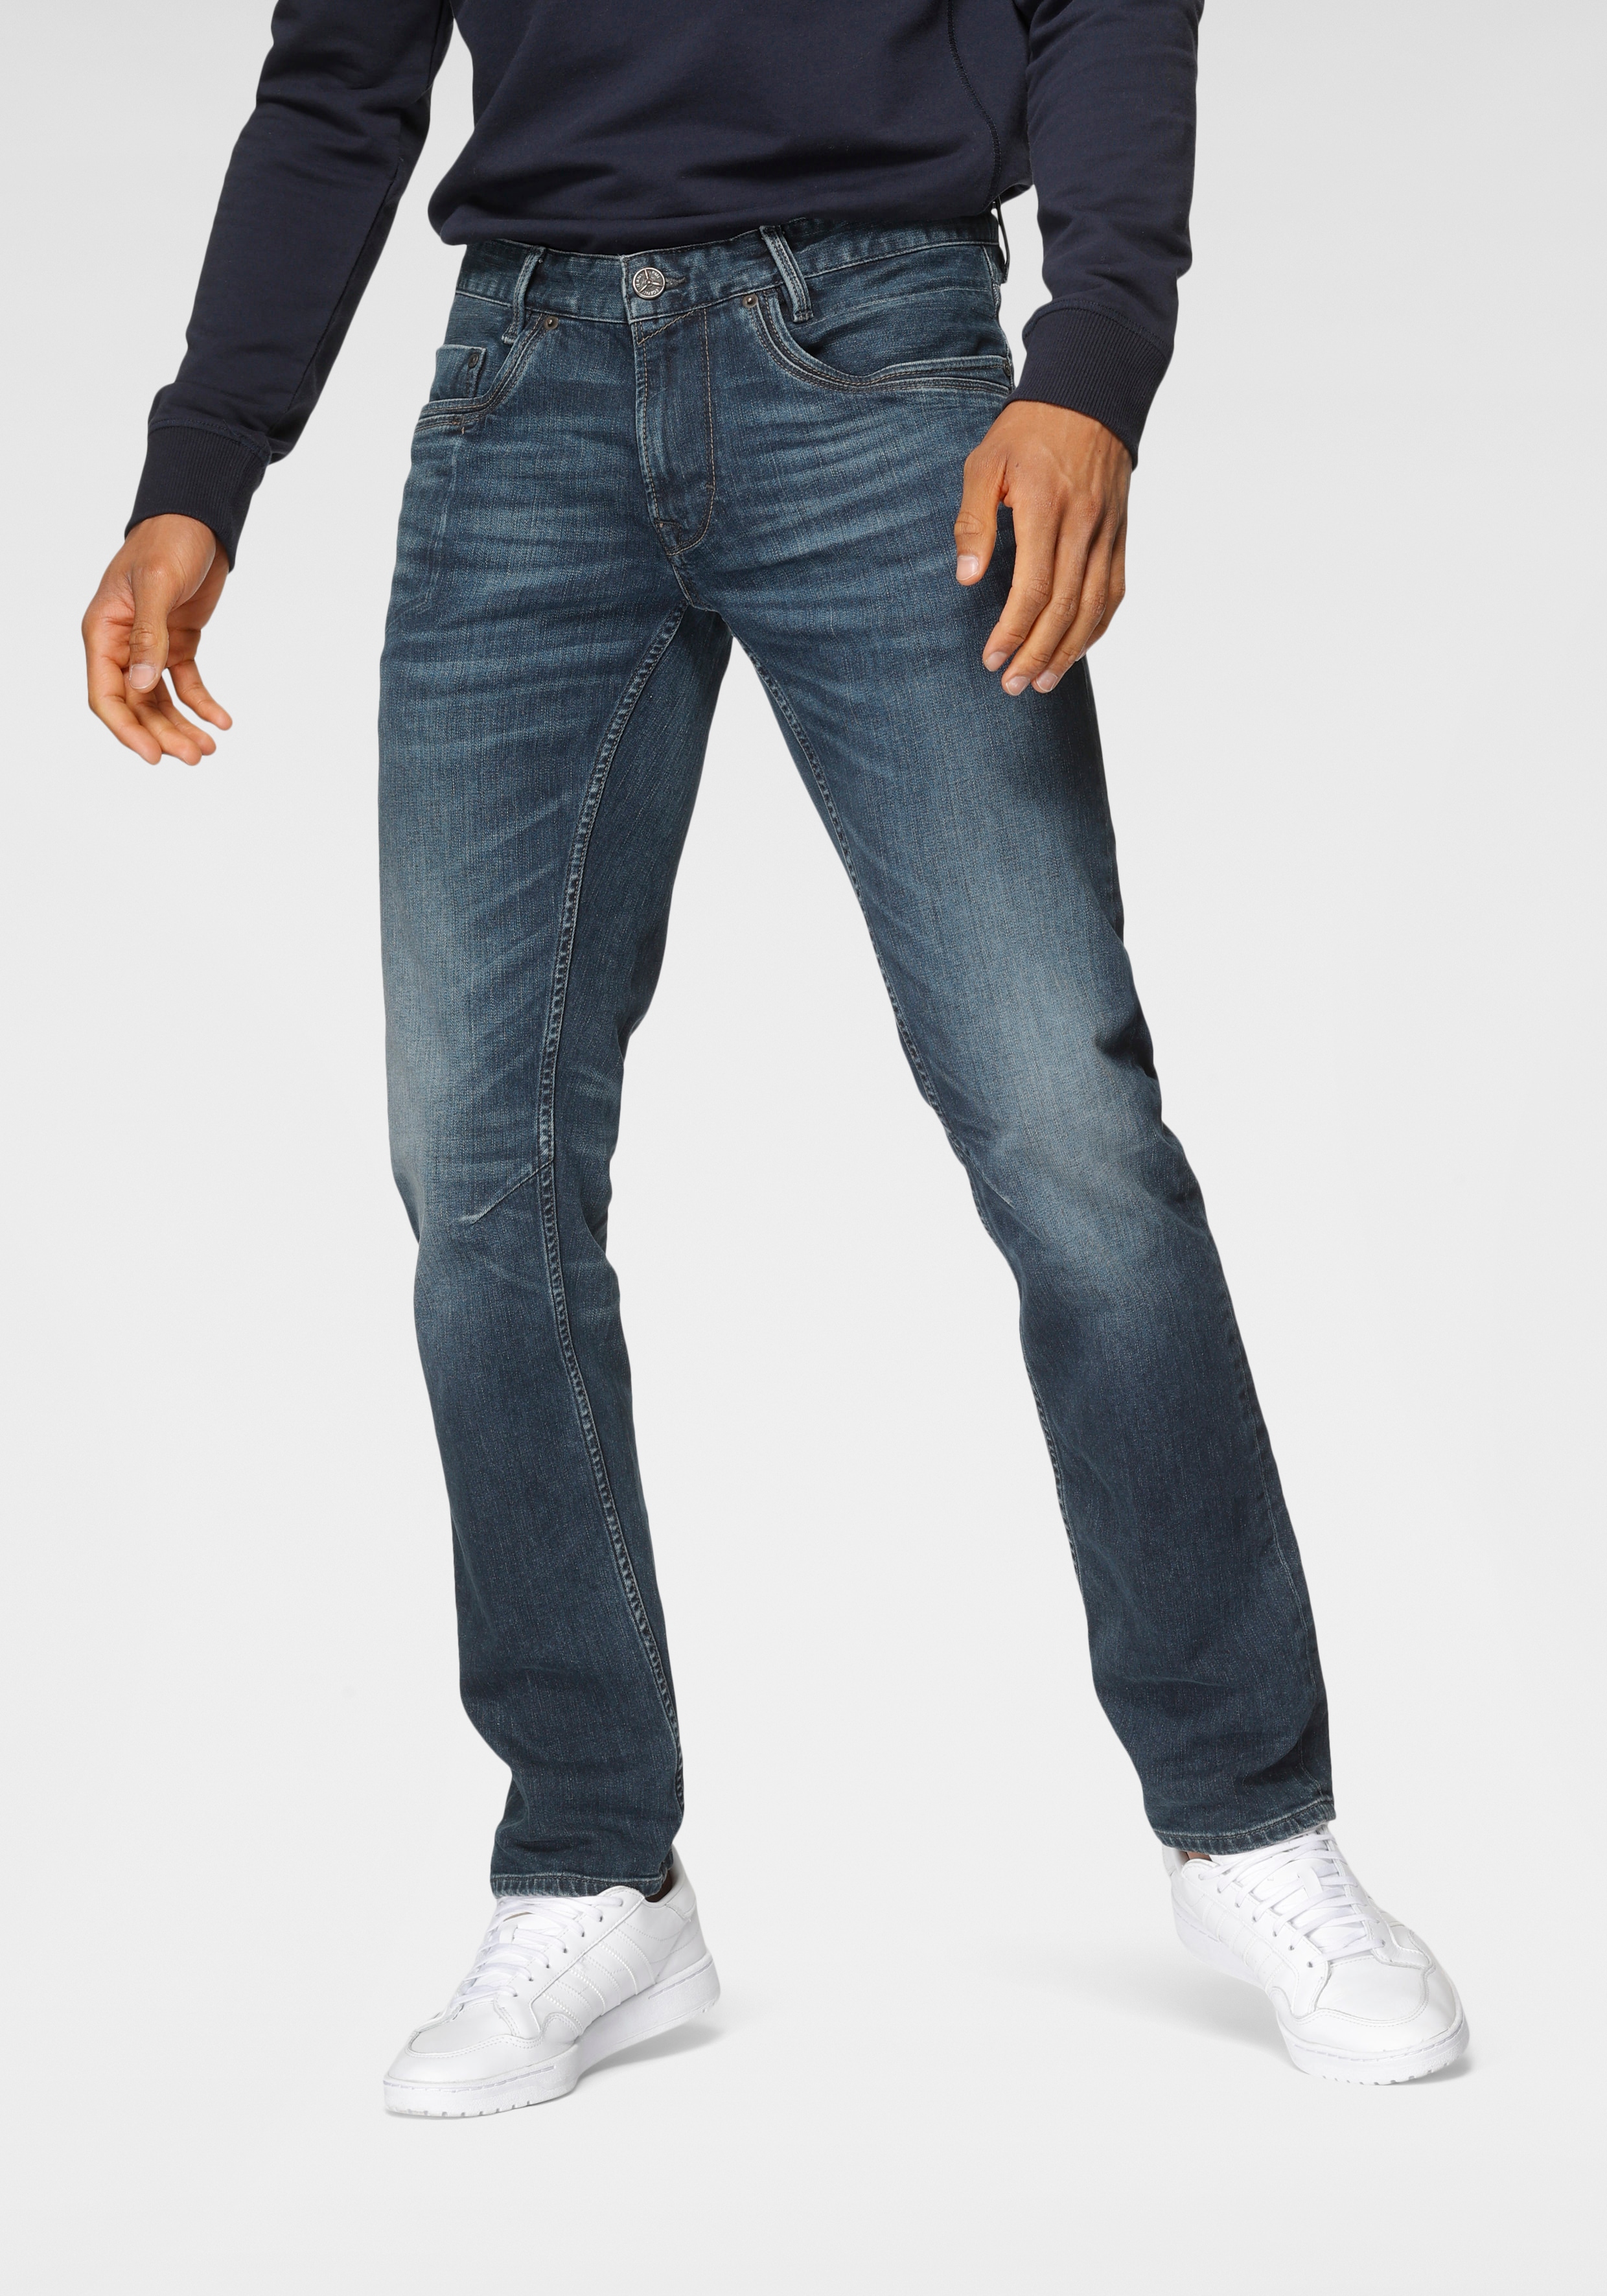 Pme Legend Herren Jeans Ptr650-diw günstig online kaufen